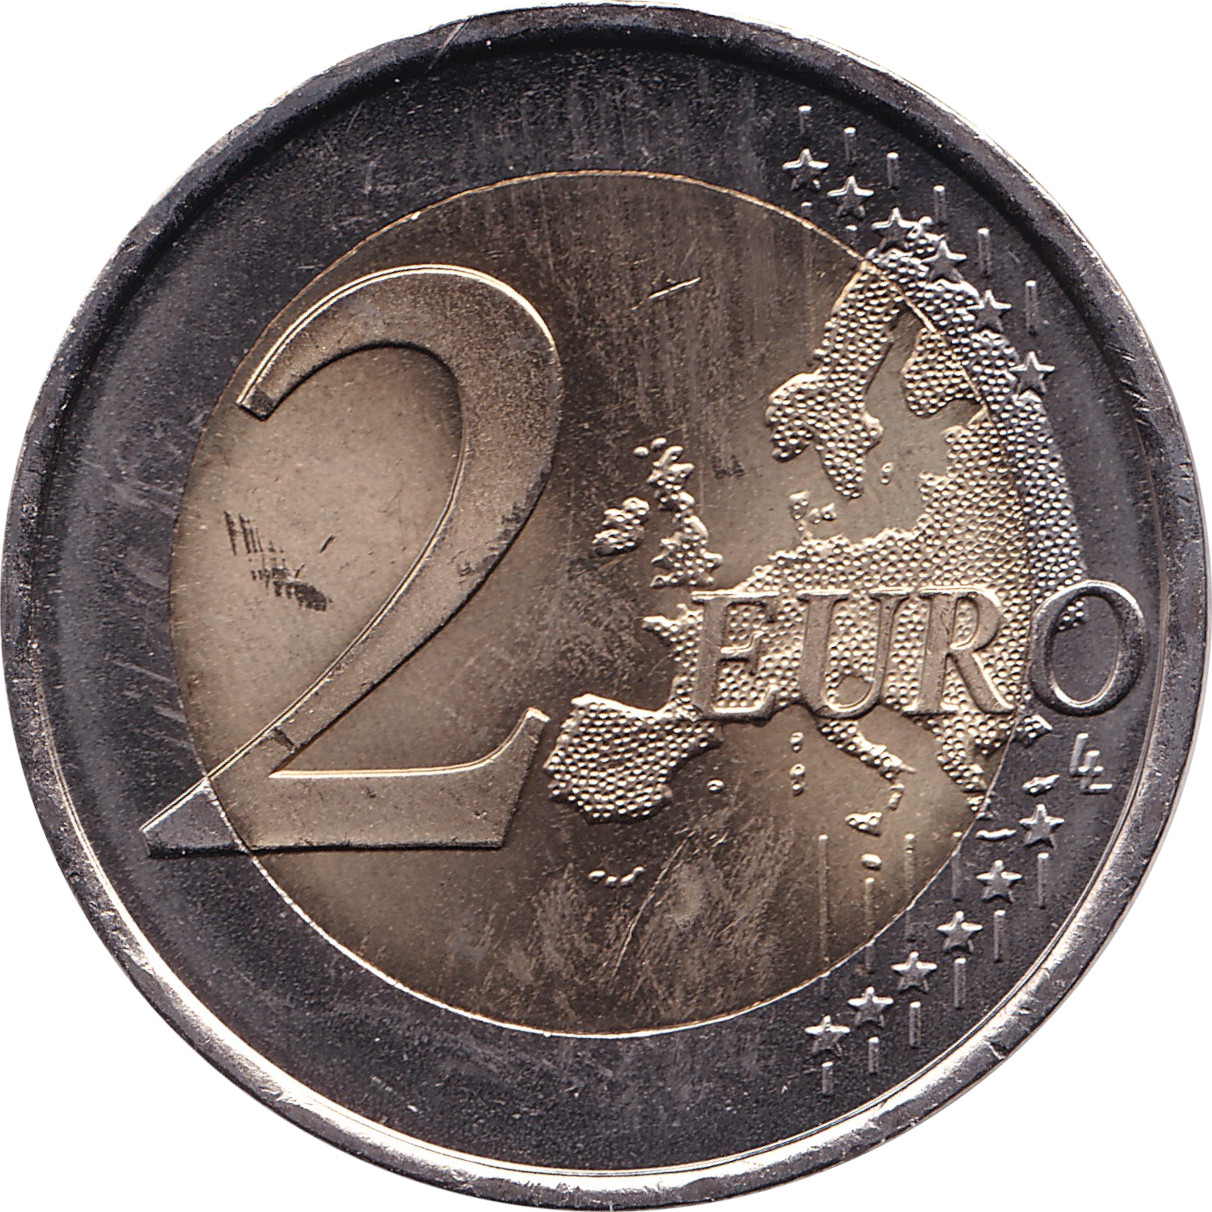 2 euro - Roi Philippe - 50 ans